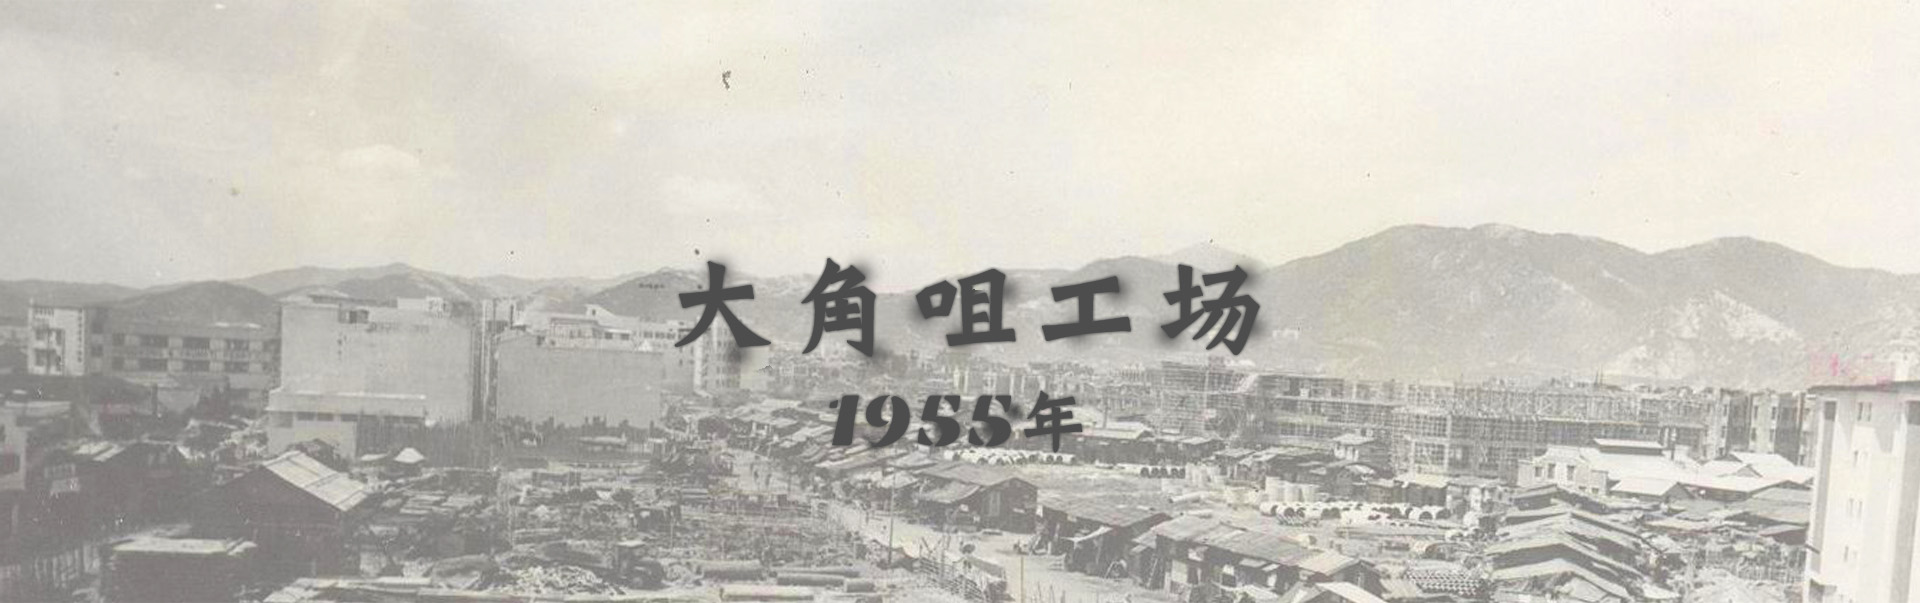 1955年大角咀工场